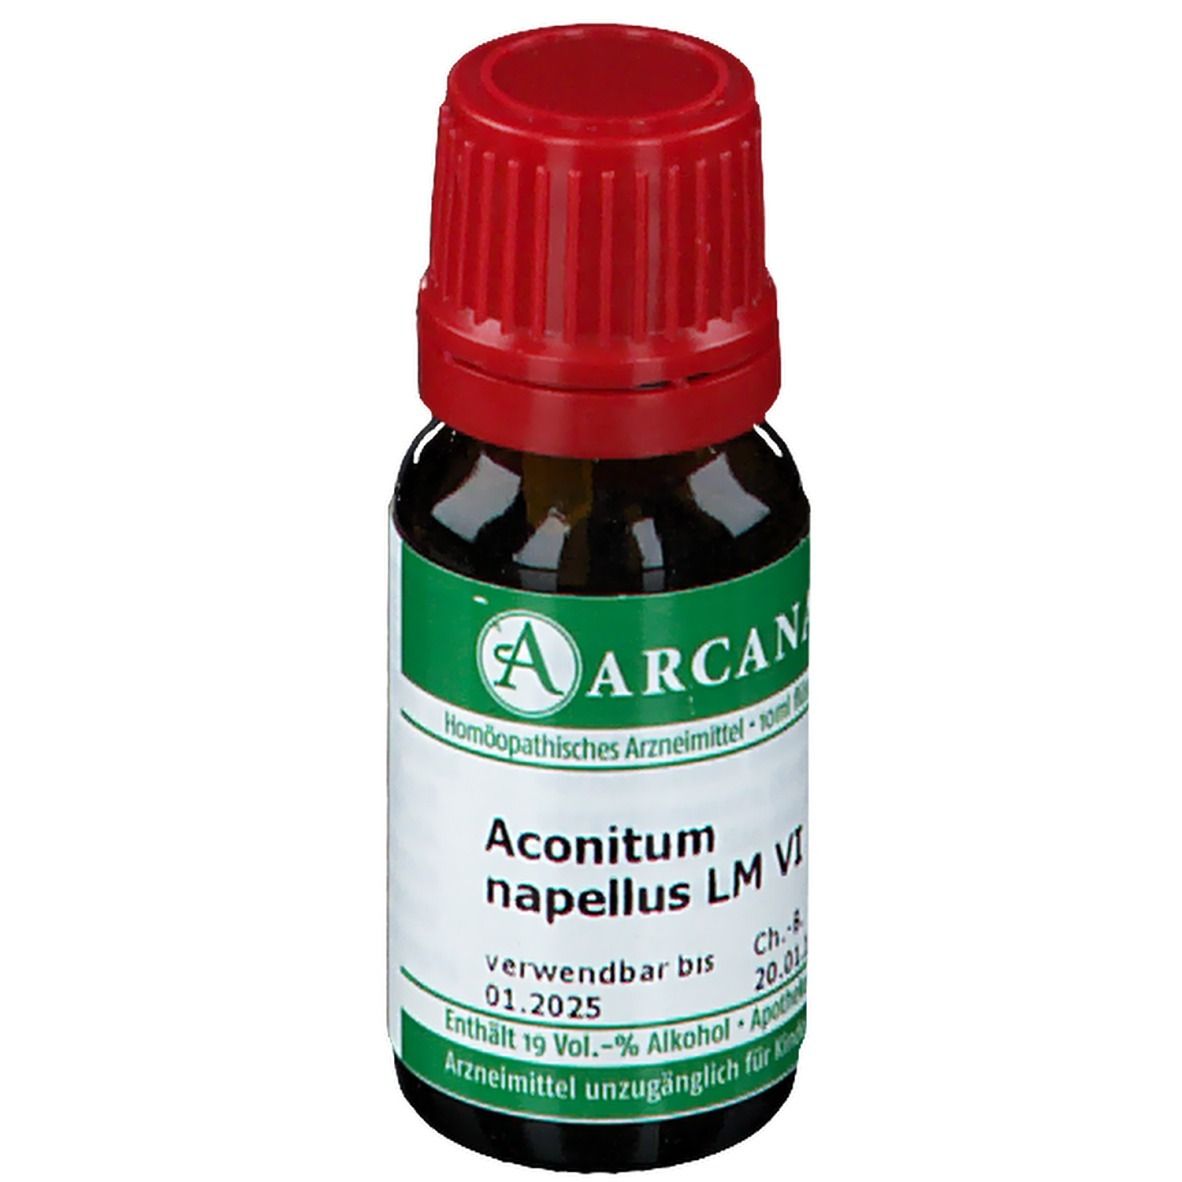 ARCANA® Aconitum napellus LM VI